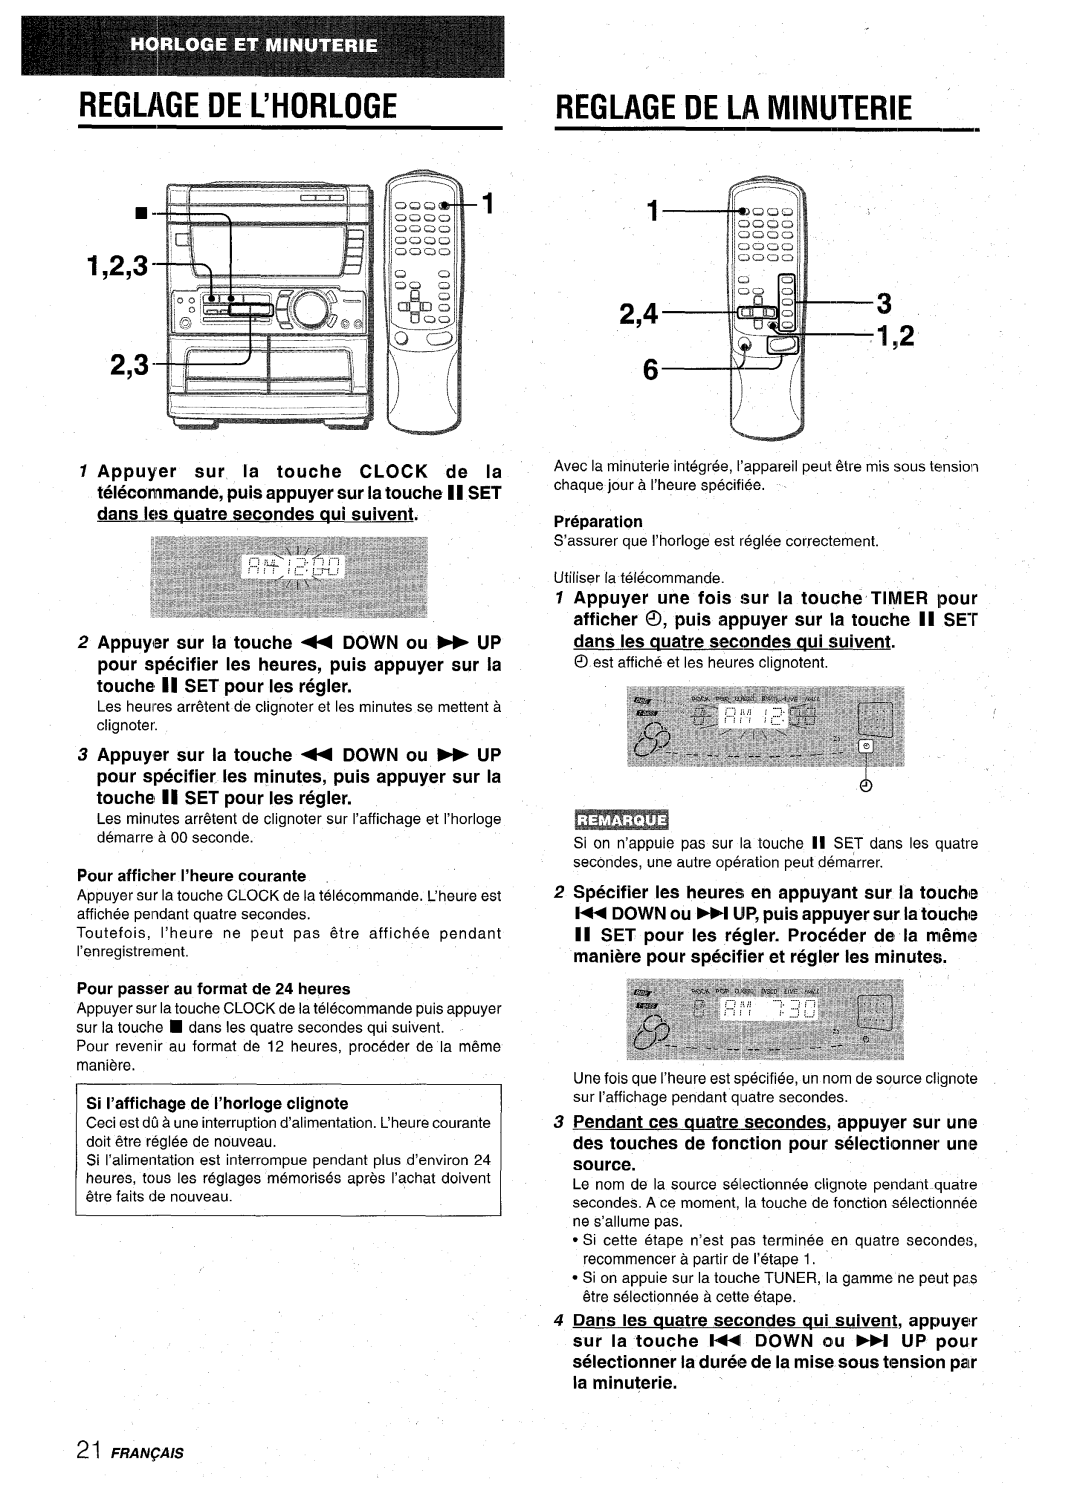 Aiwa CX-NA71 manual Reglage De L’Horloge, Reglage De La Minuterie, Pour afficlher I’heure courante, Preparaticm, 2,43 1,2 